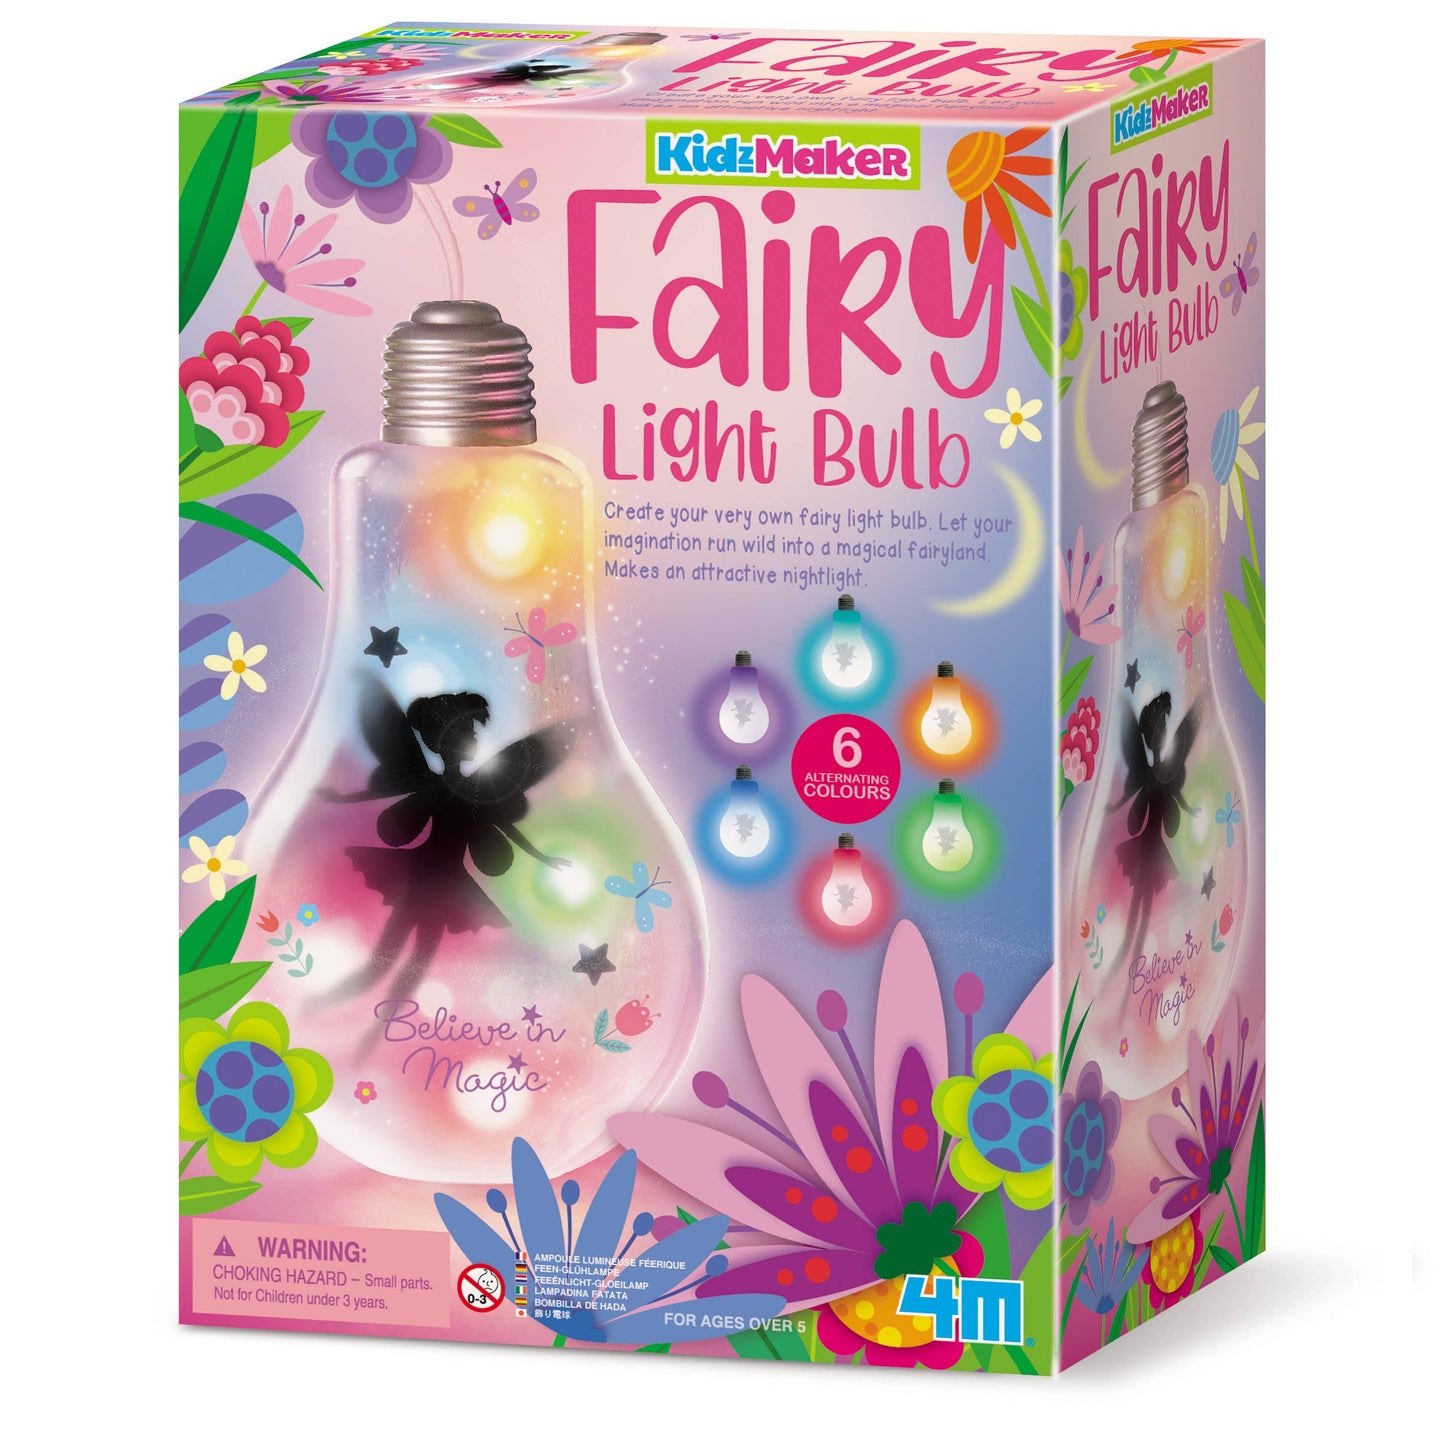 Fairy Light Bulb Kit, DIY